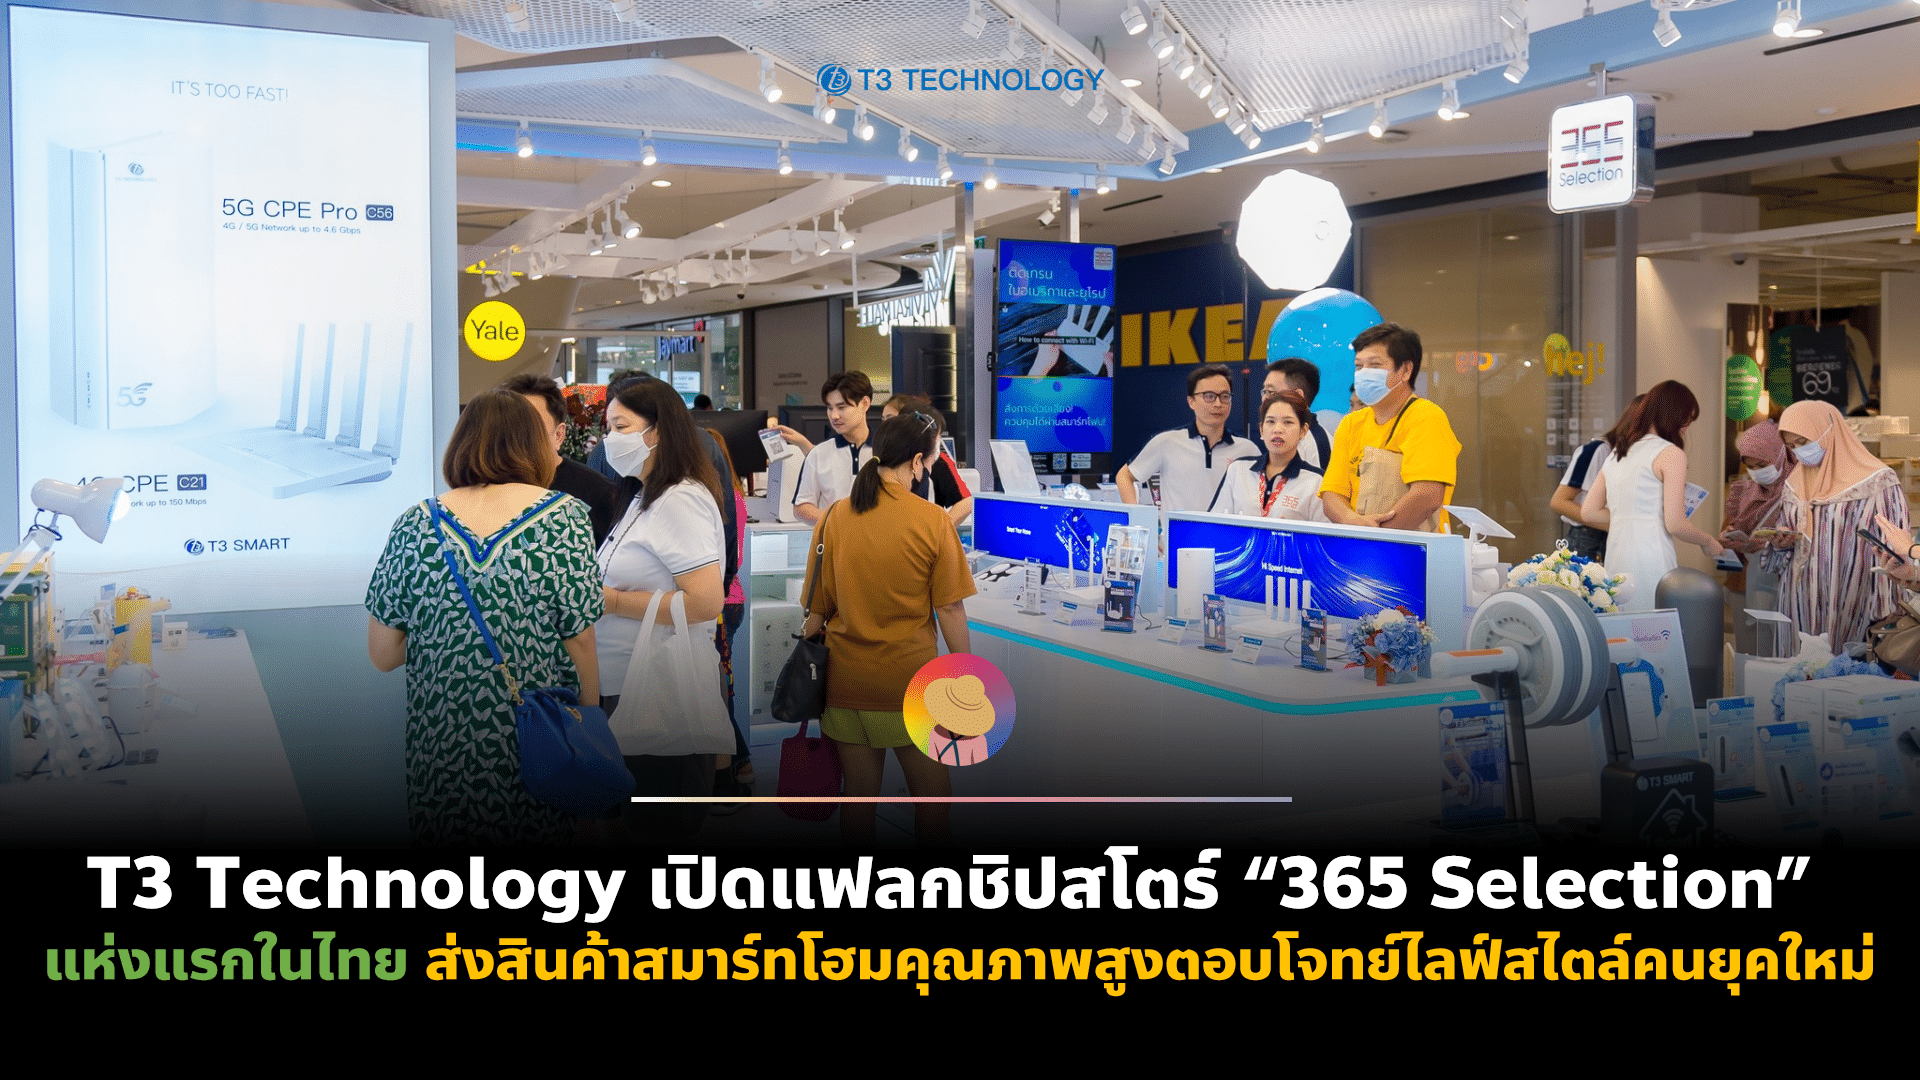 T3 Technology เปิดแฟลกชิปสโตร์ “365 Selection” แห่งแรกในไทย ส่งสินค้าสมาร์ทโฮมคุณภาพสูงตอบโจทย์ไลฟ์สไตล์คนยุคใหม่